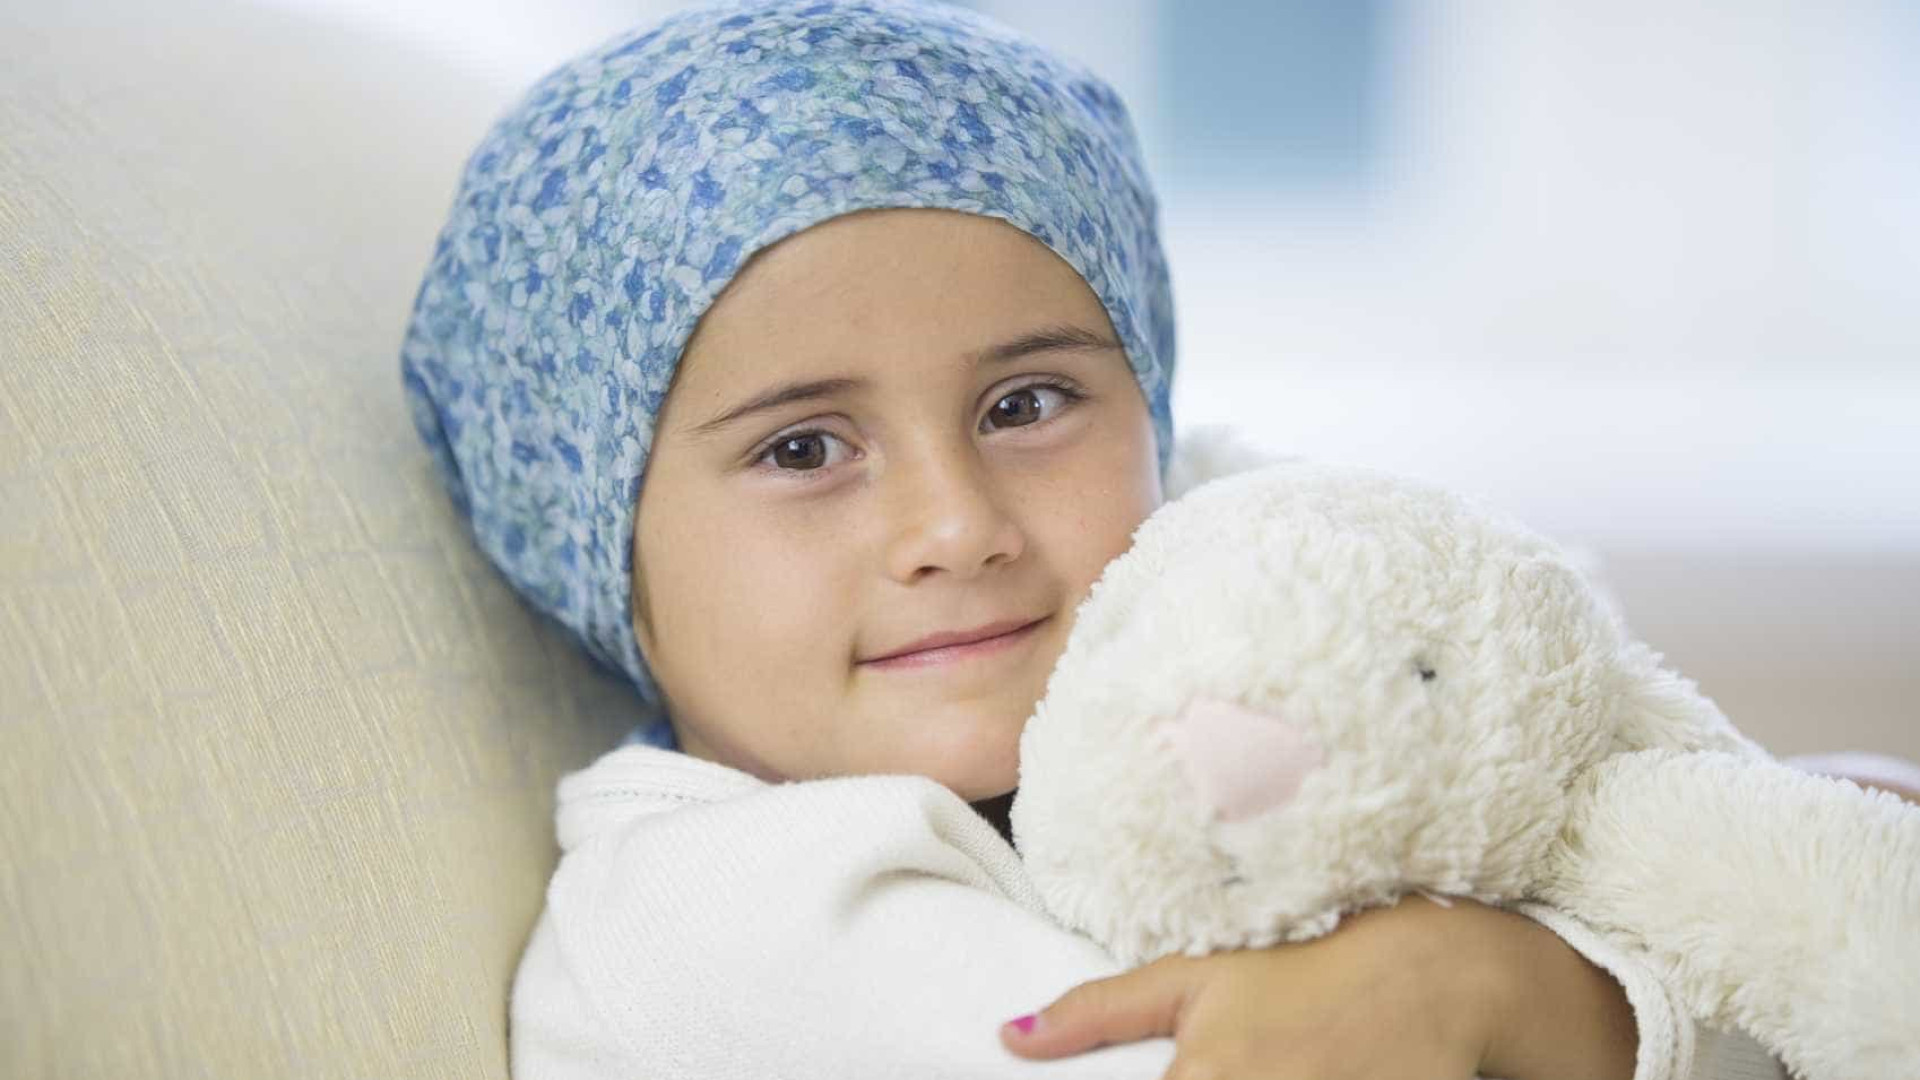 Quando descoberto a tempo, câncer infantil 
tem 70% de chance de cura